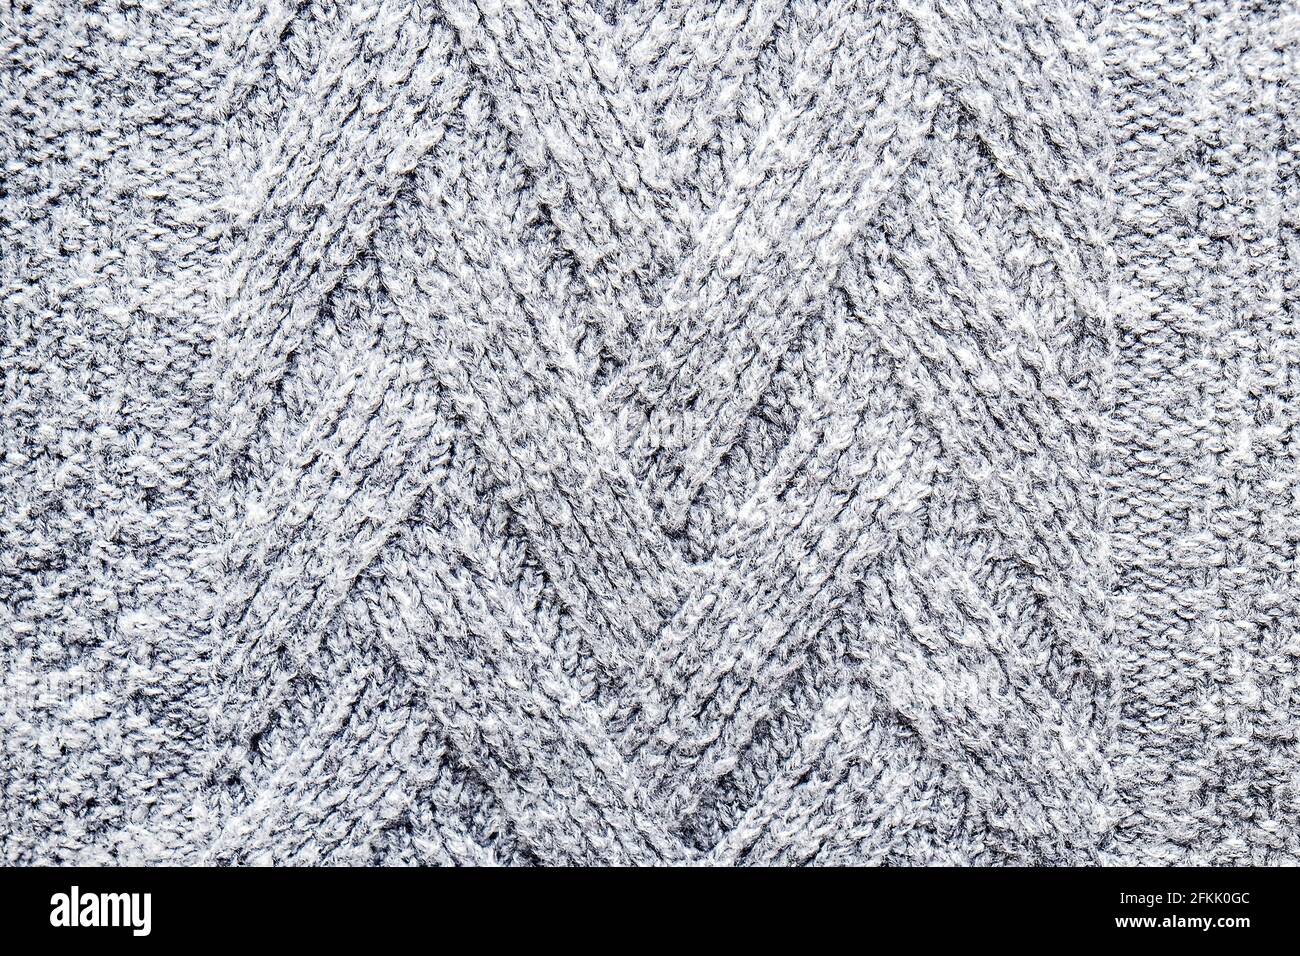 Foto corta de primer plano de tejido de lana sin costuras de otoño / invierno cálido jersey, textura de fibra claramente visible de elegante punto de cintura baja Foto de stock